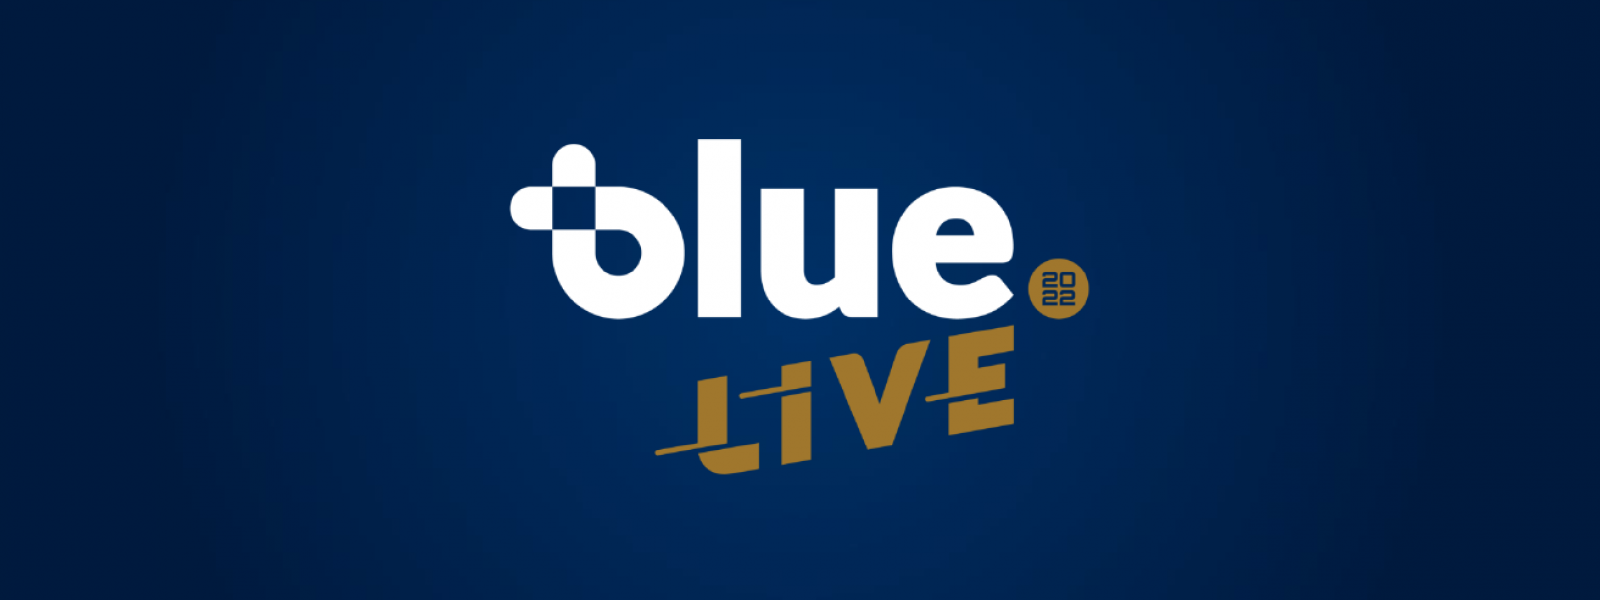 Visuel évènement Blue Live 2022